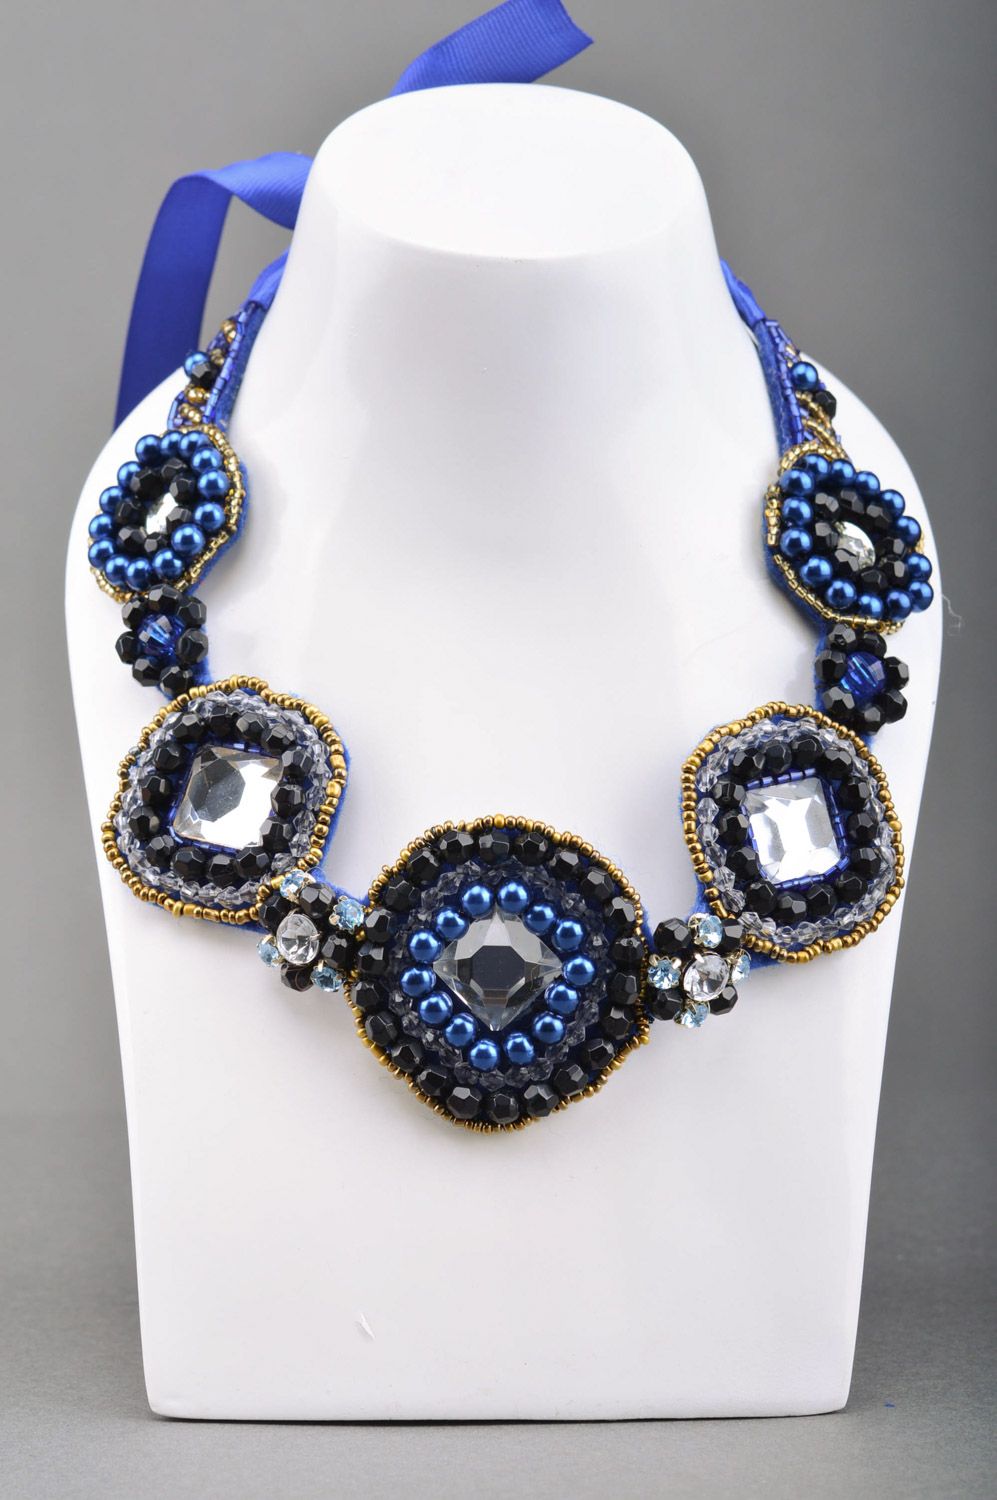 Grand collier bleu feutre perles fantaisie fait main Mille et Une Nuits photo 1